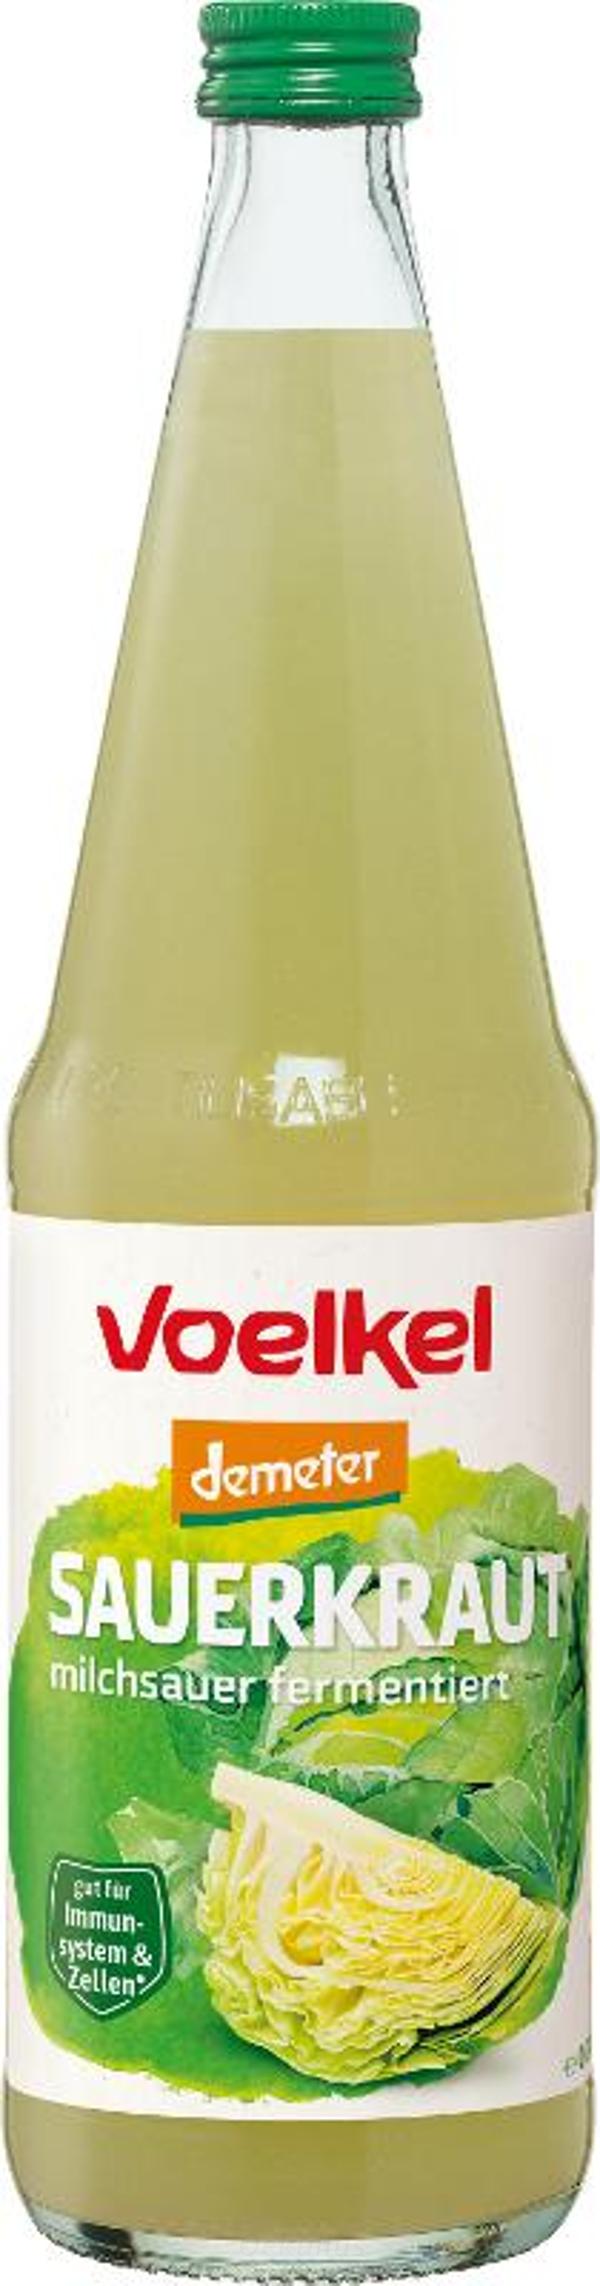 Produktfoto zu Sauerkrautsaft Flasche